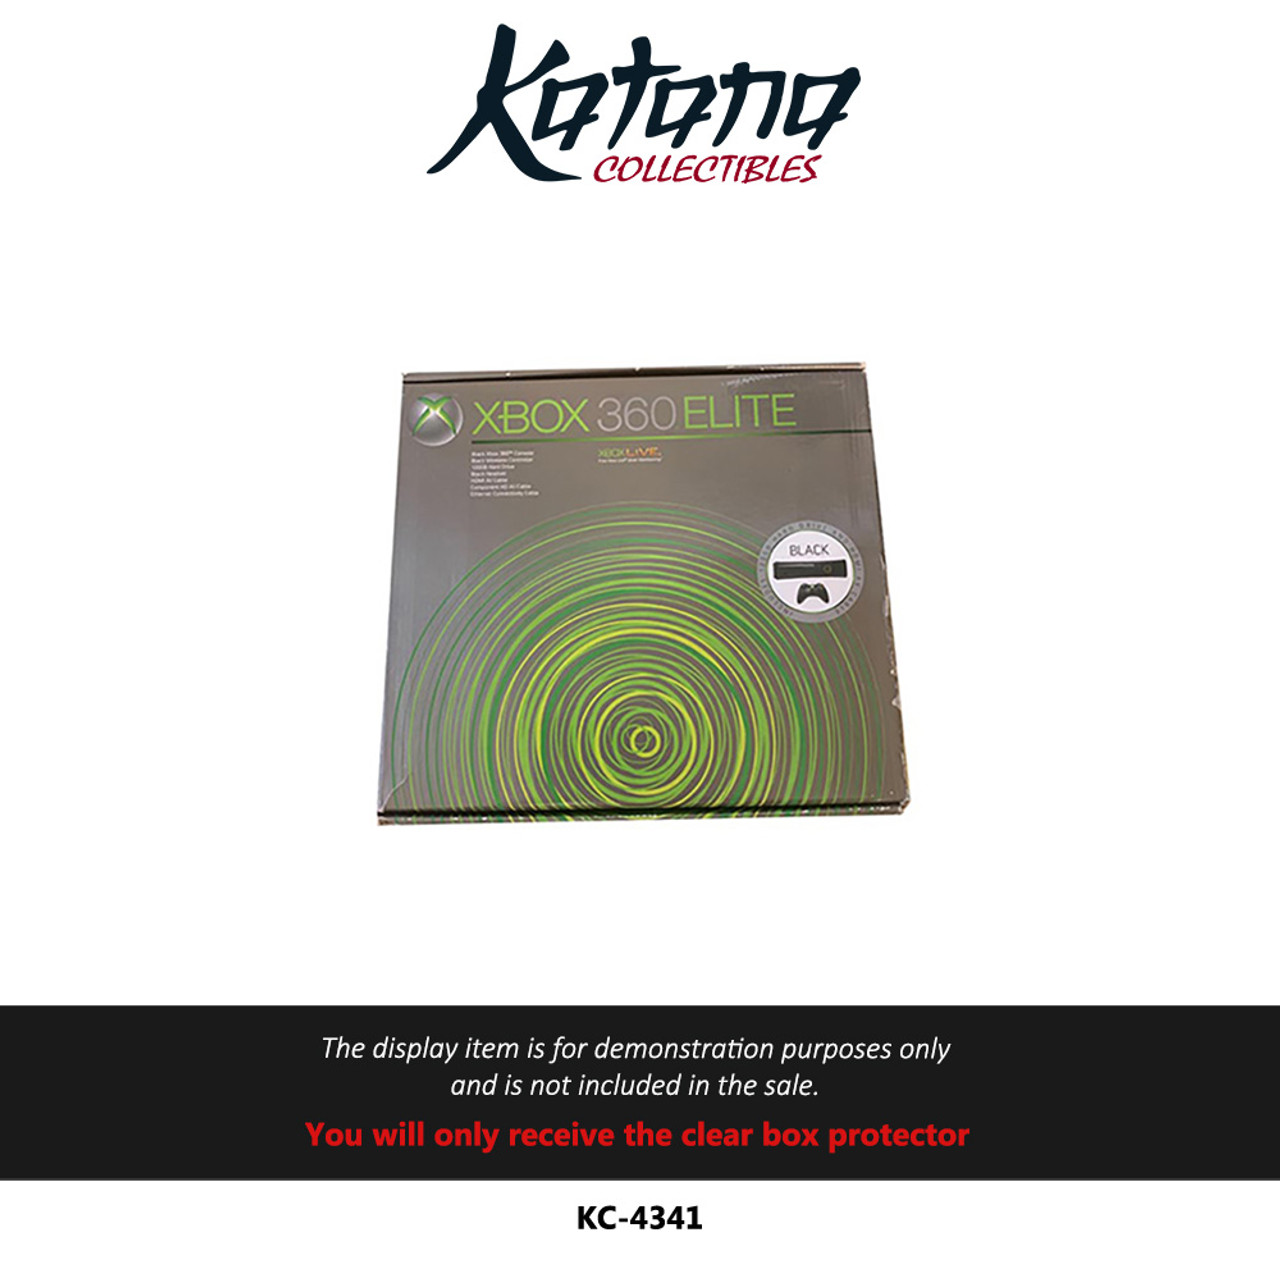 Katana Collectibles Protector For Xbox 360 Console Box Elite